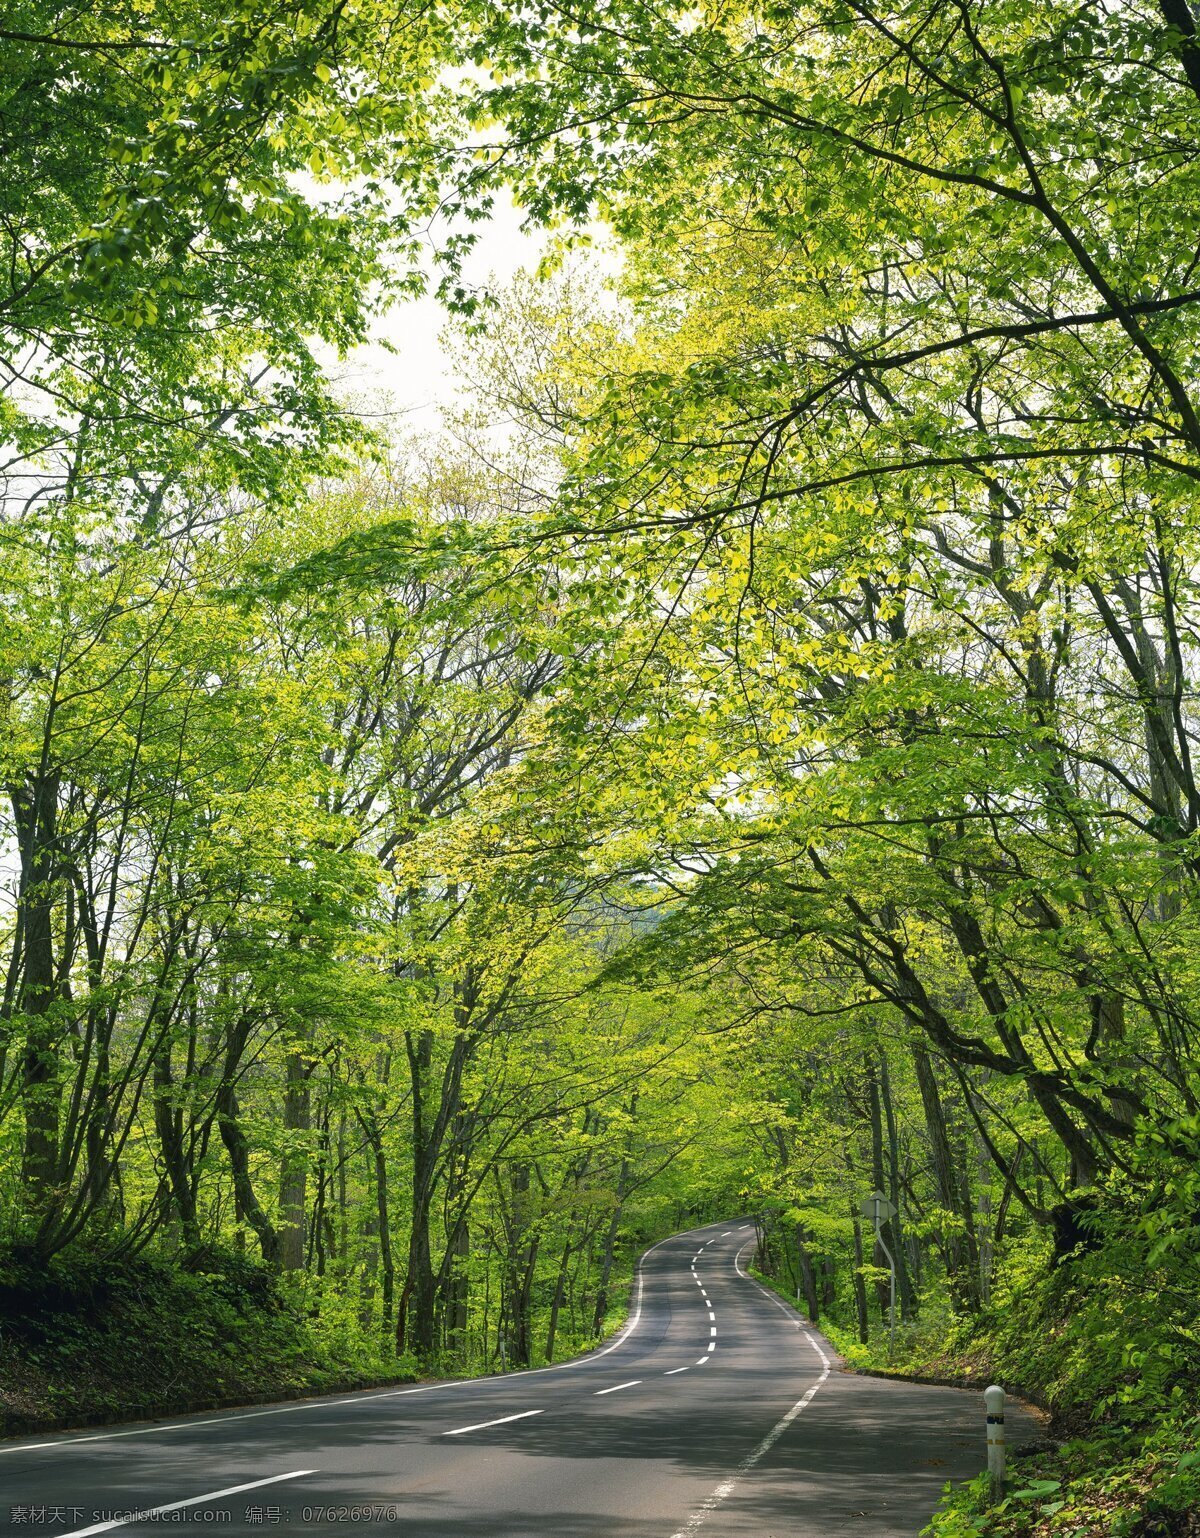 林荫大道 公路 道路 马路 树木 绿色 阴凉 美景 多娇江山 自然景观 自然风景